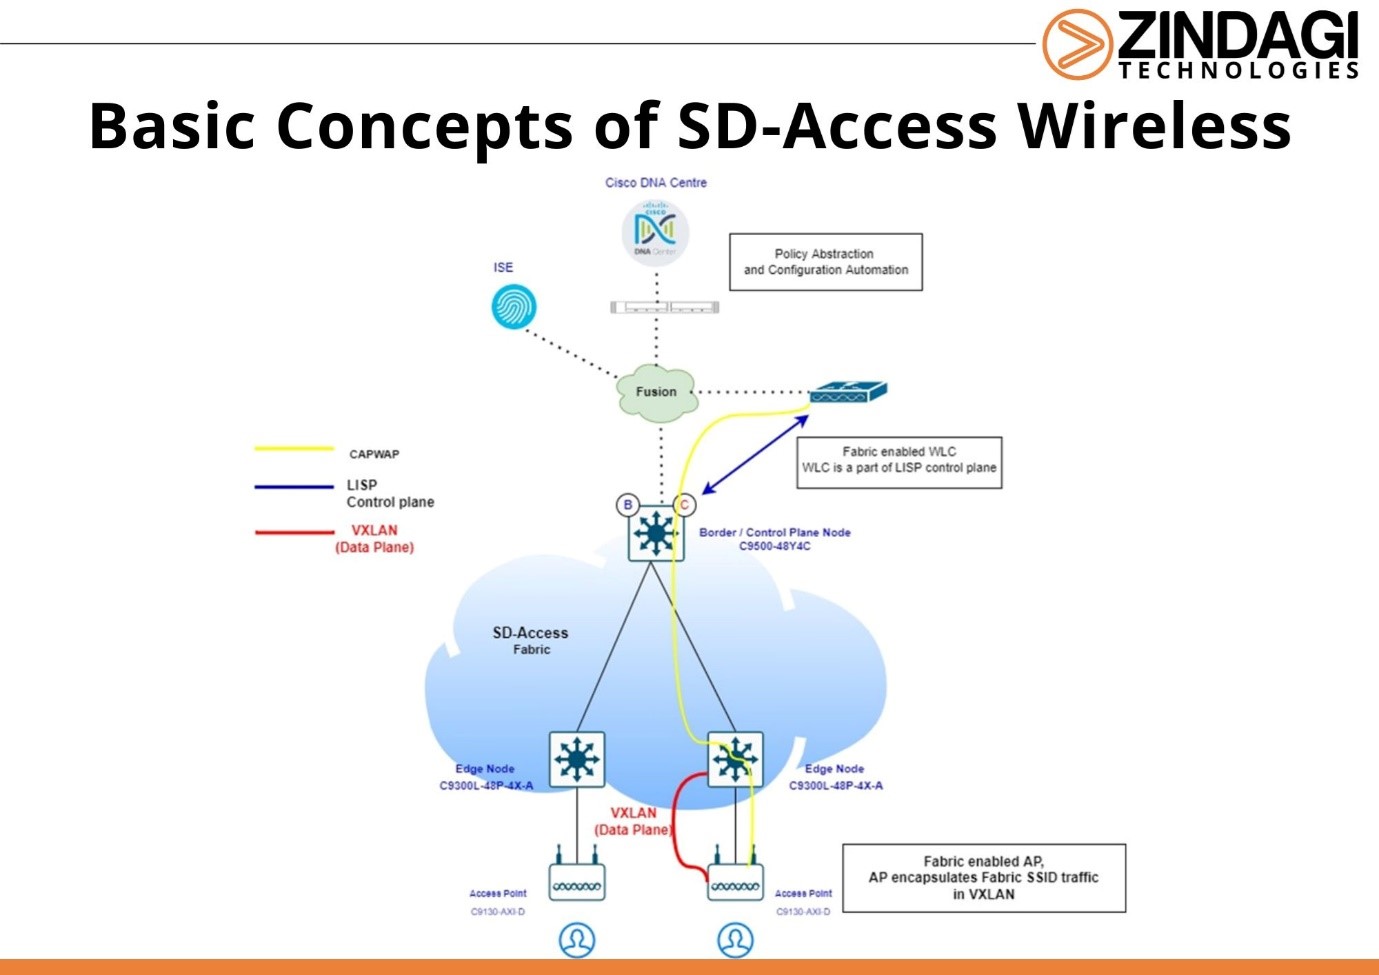 SD-Access